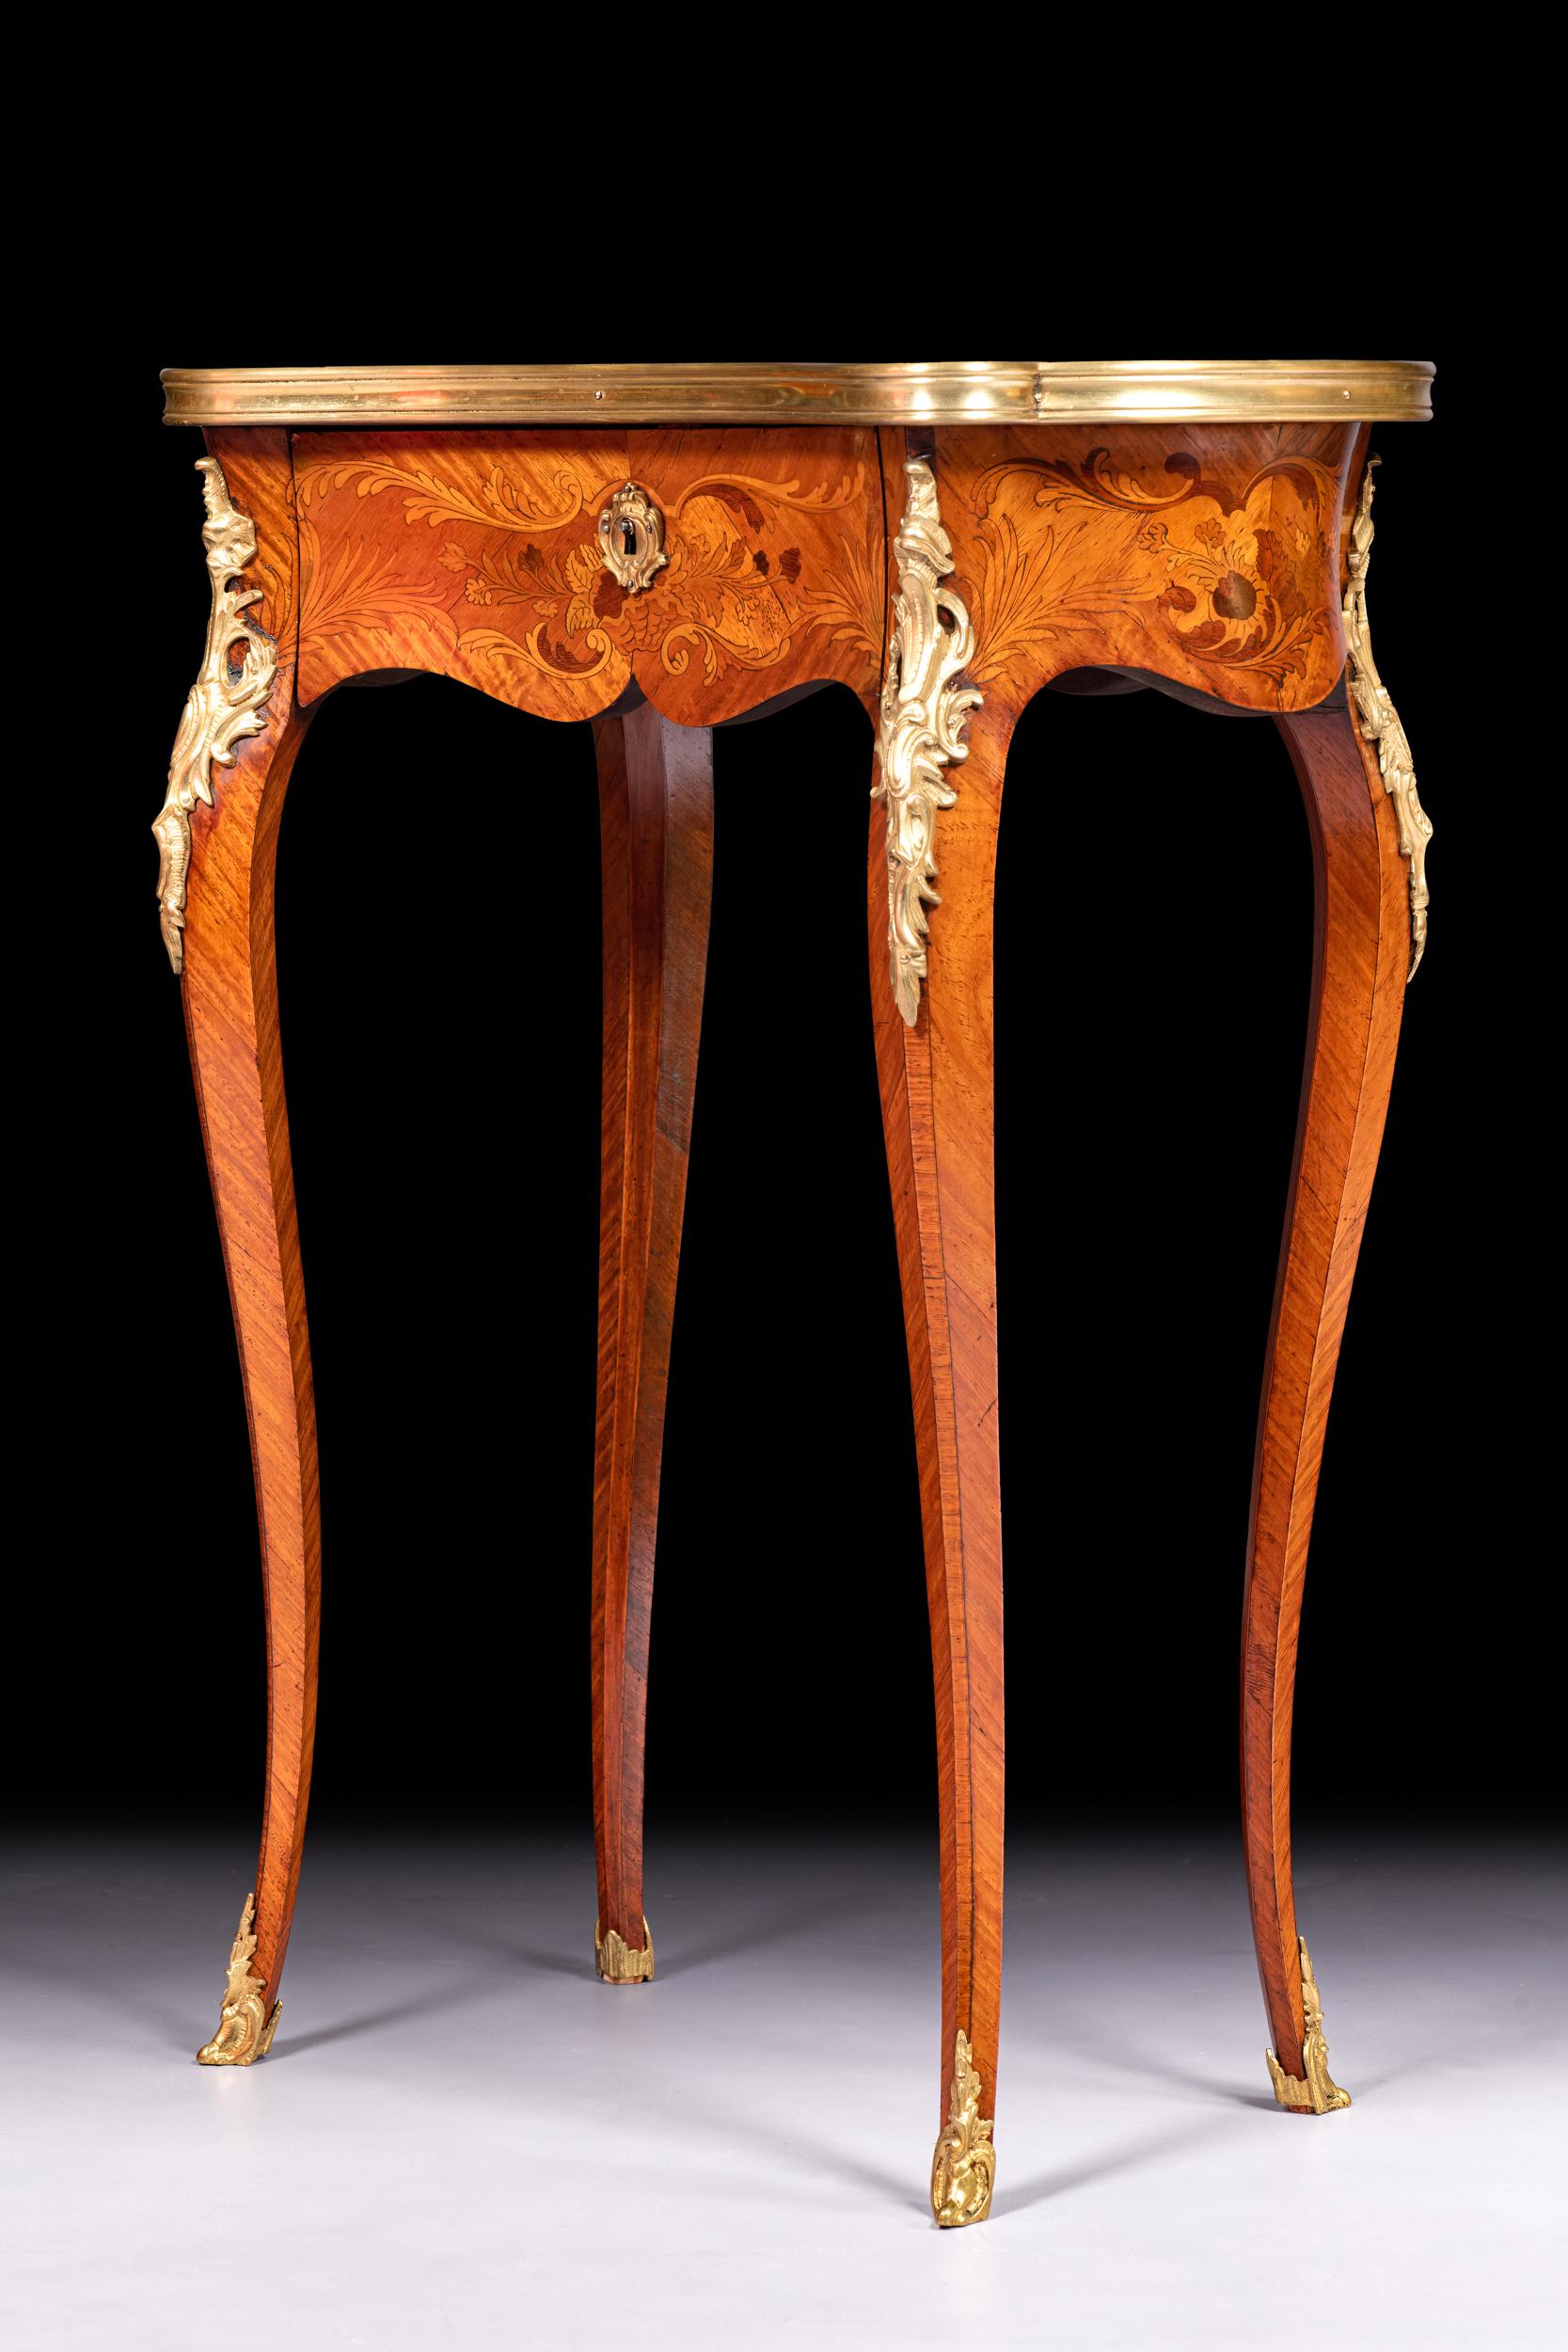 Table d'appoint en bois de roi et marqueterie du XIXe siècle /  